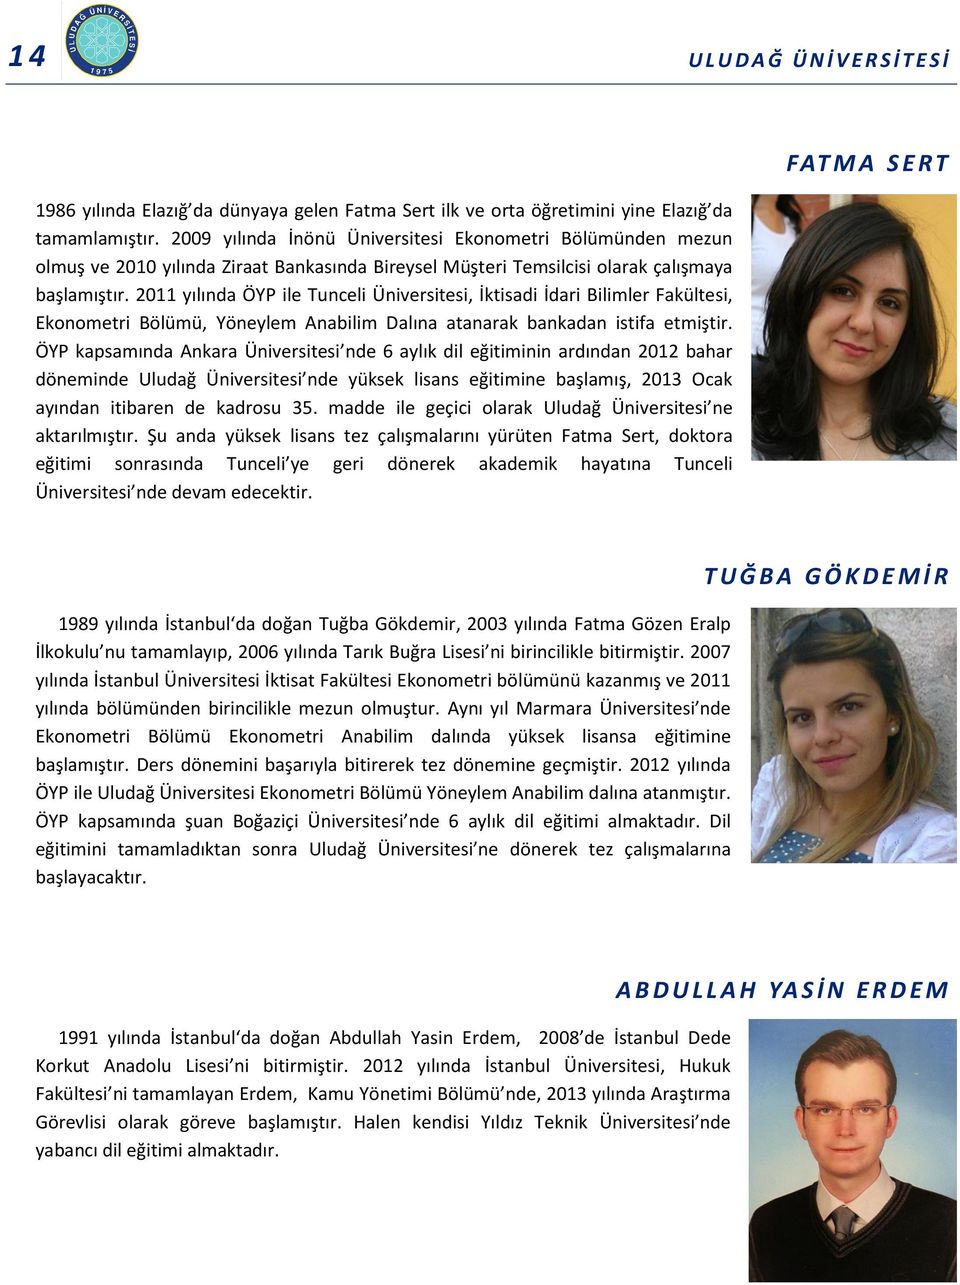 2011 yılında ÖYP ile Tunceli Üniversitesi, İktisadi İdari Bilimler Fakültesi, Ekonometri Bölümü, Yöneylem Anabilim Dalına atanarak bankadan istifa etmiştir.